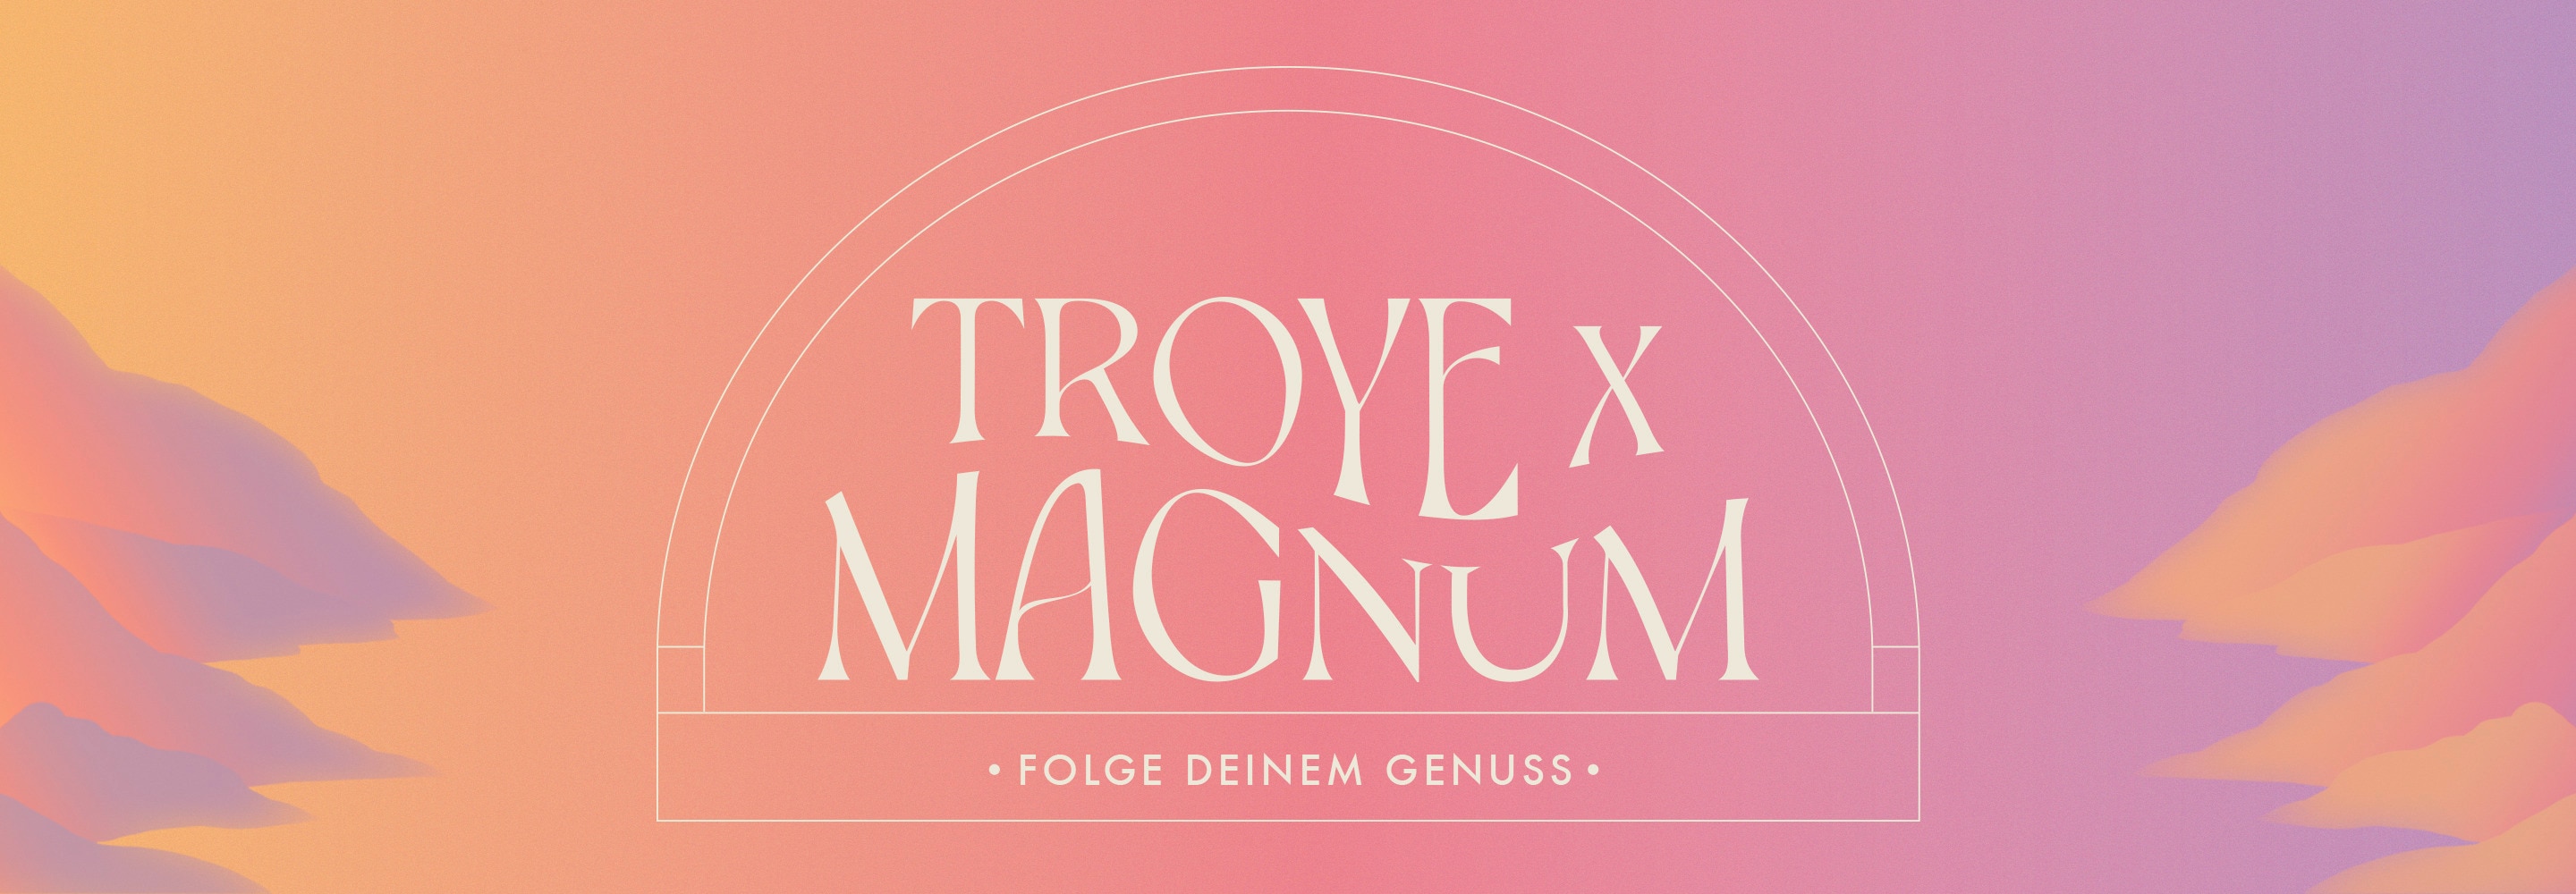 Bild mit Schriftzug 'Troye x Magnum',  in einem Bogen und der Unterzeile 'Folge deinem Genuss'. Auf einem rosa und lila Hintergrund befinden sich Illustrationen von Bergen.